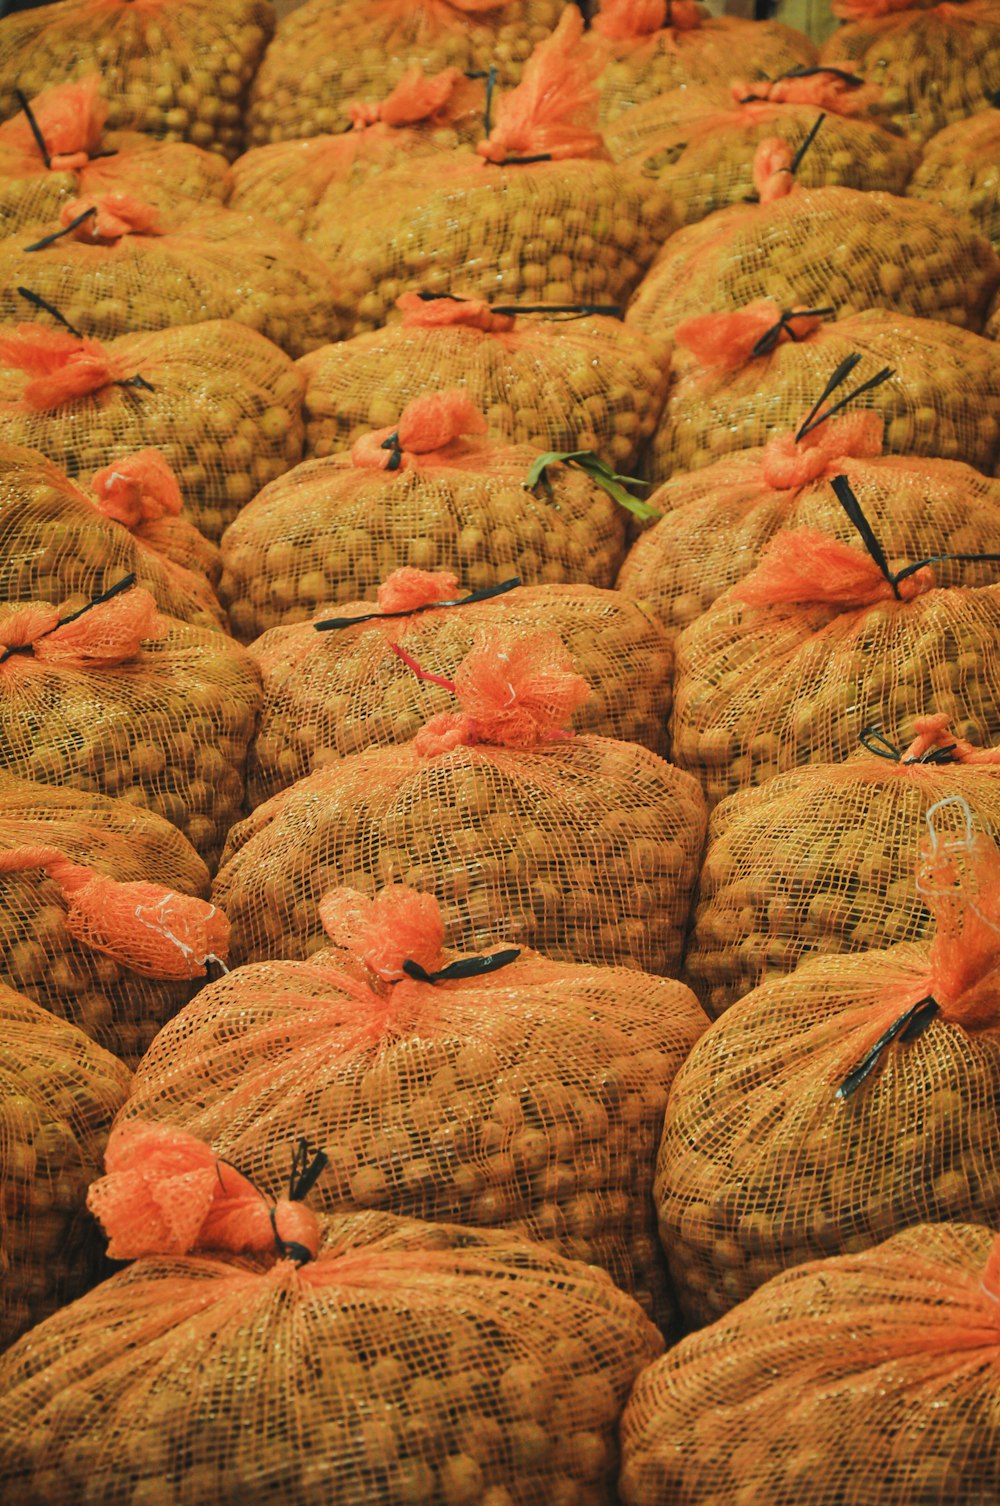 round brown fruit on orange mesh bag lot